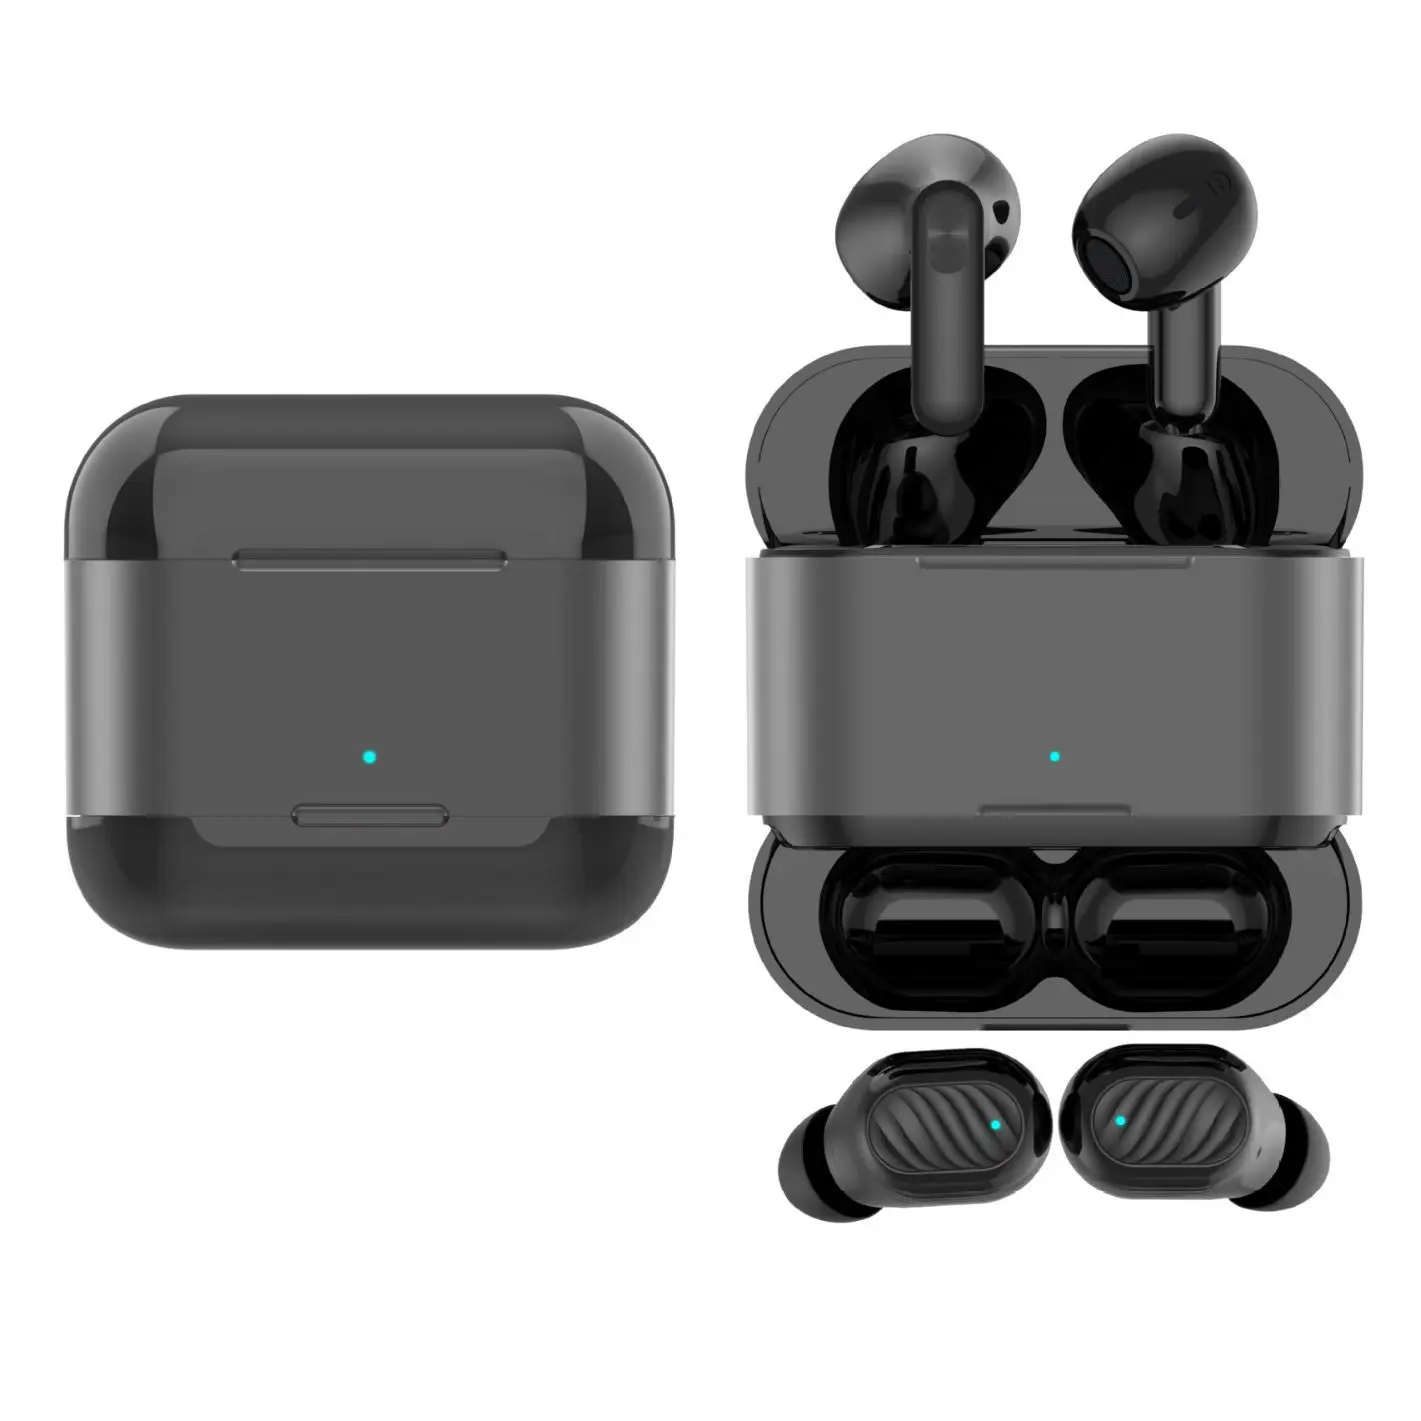 

Симпатичные Мультяшные беспроводные Bluetooth-наушники с HD-вызовом, долгий срок службы, низкая задержка, шумоподавление, умные сенсорные игровые двойные наушники